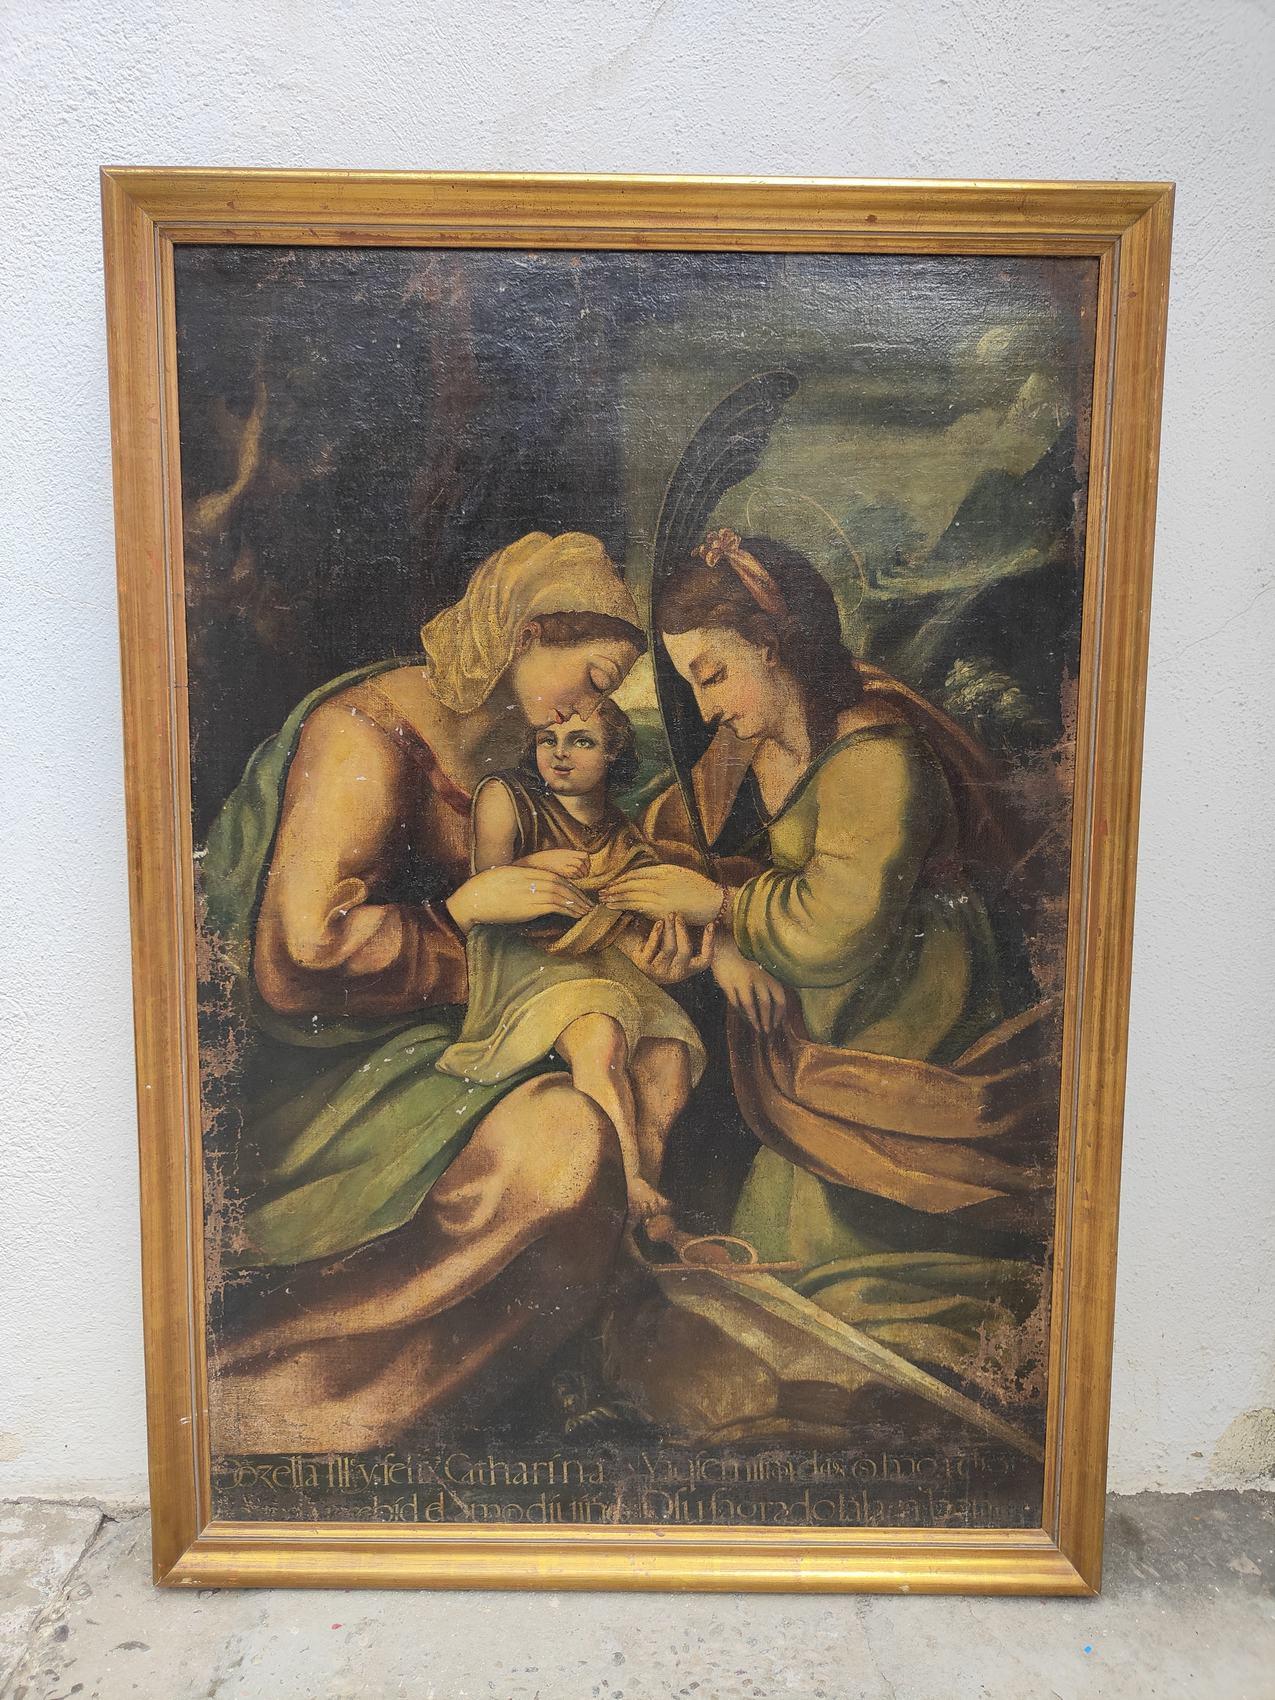 Peinture religieuse ancienne du 17e siècle
PEINTURE RELIGIEUSE DU 17E SIÈCLE. SANTA CATARINA. L'ÉCRITURE LATINE. MESURES : 116X80CM